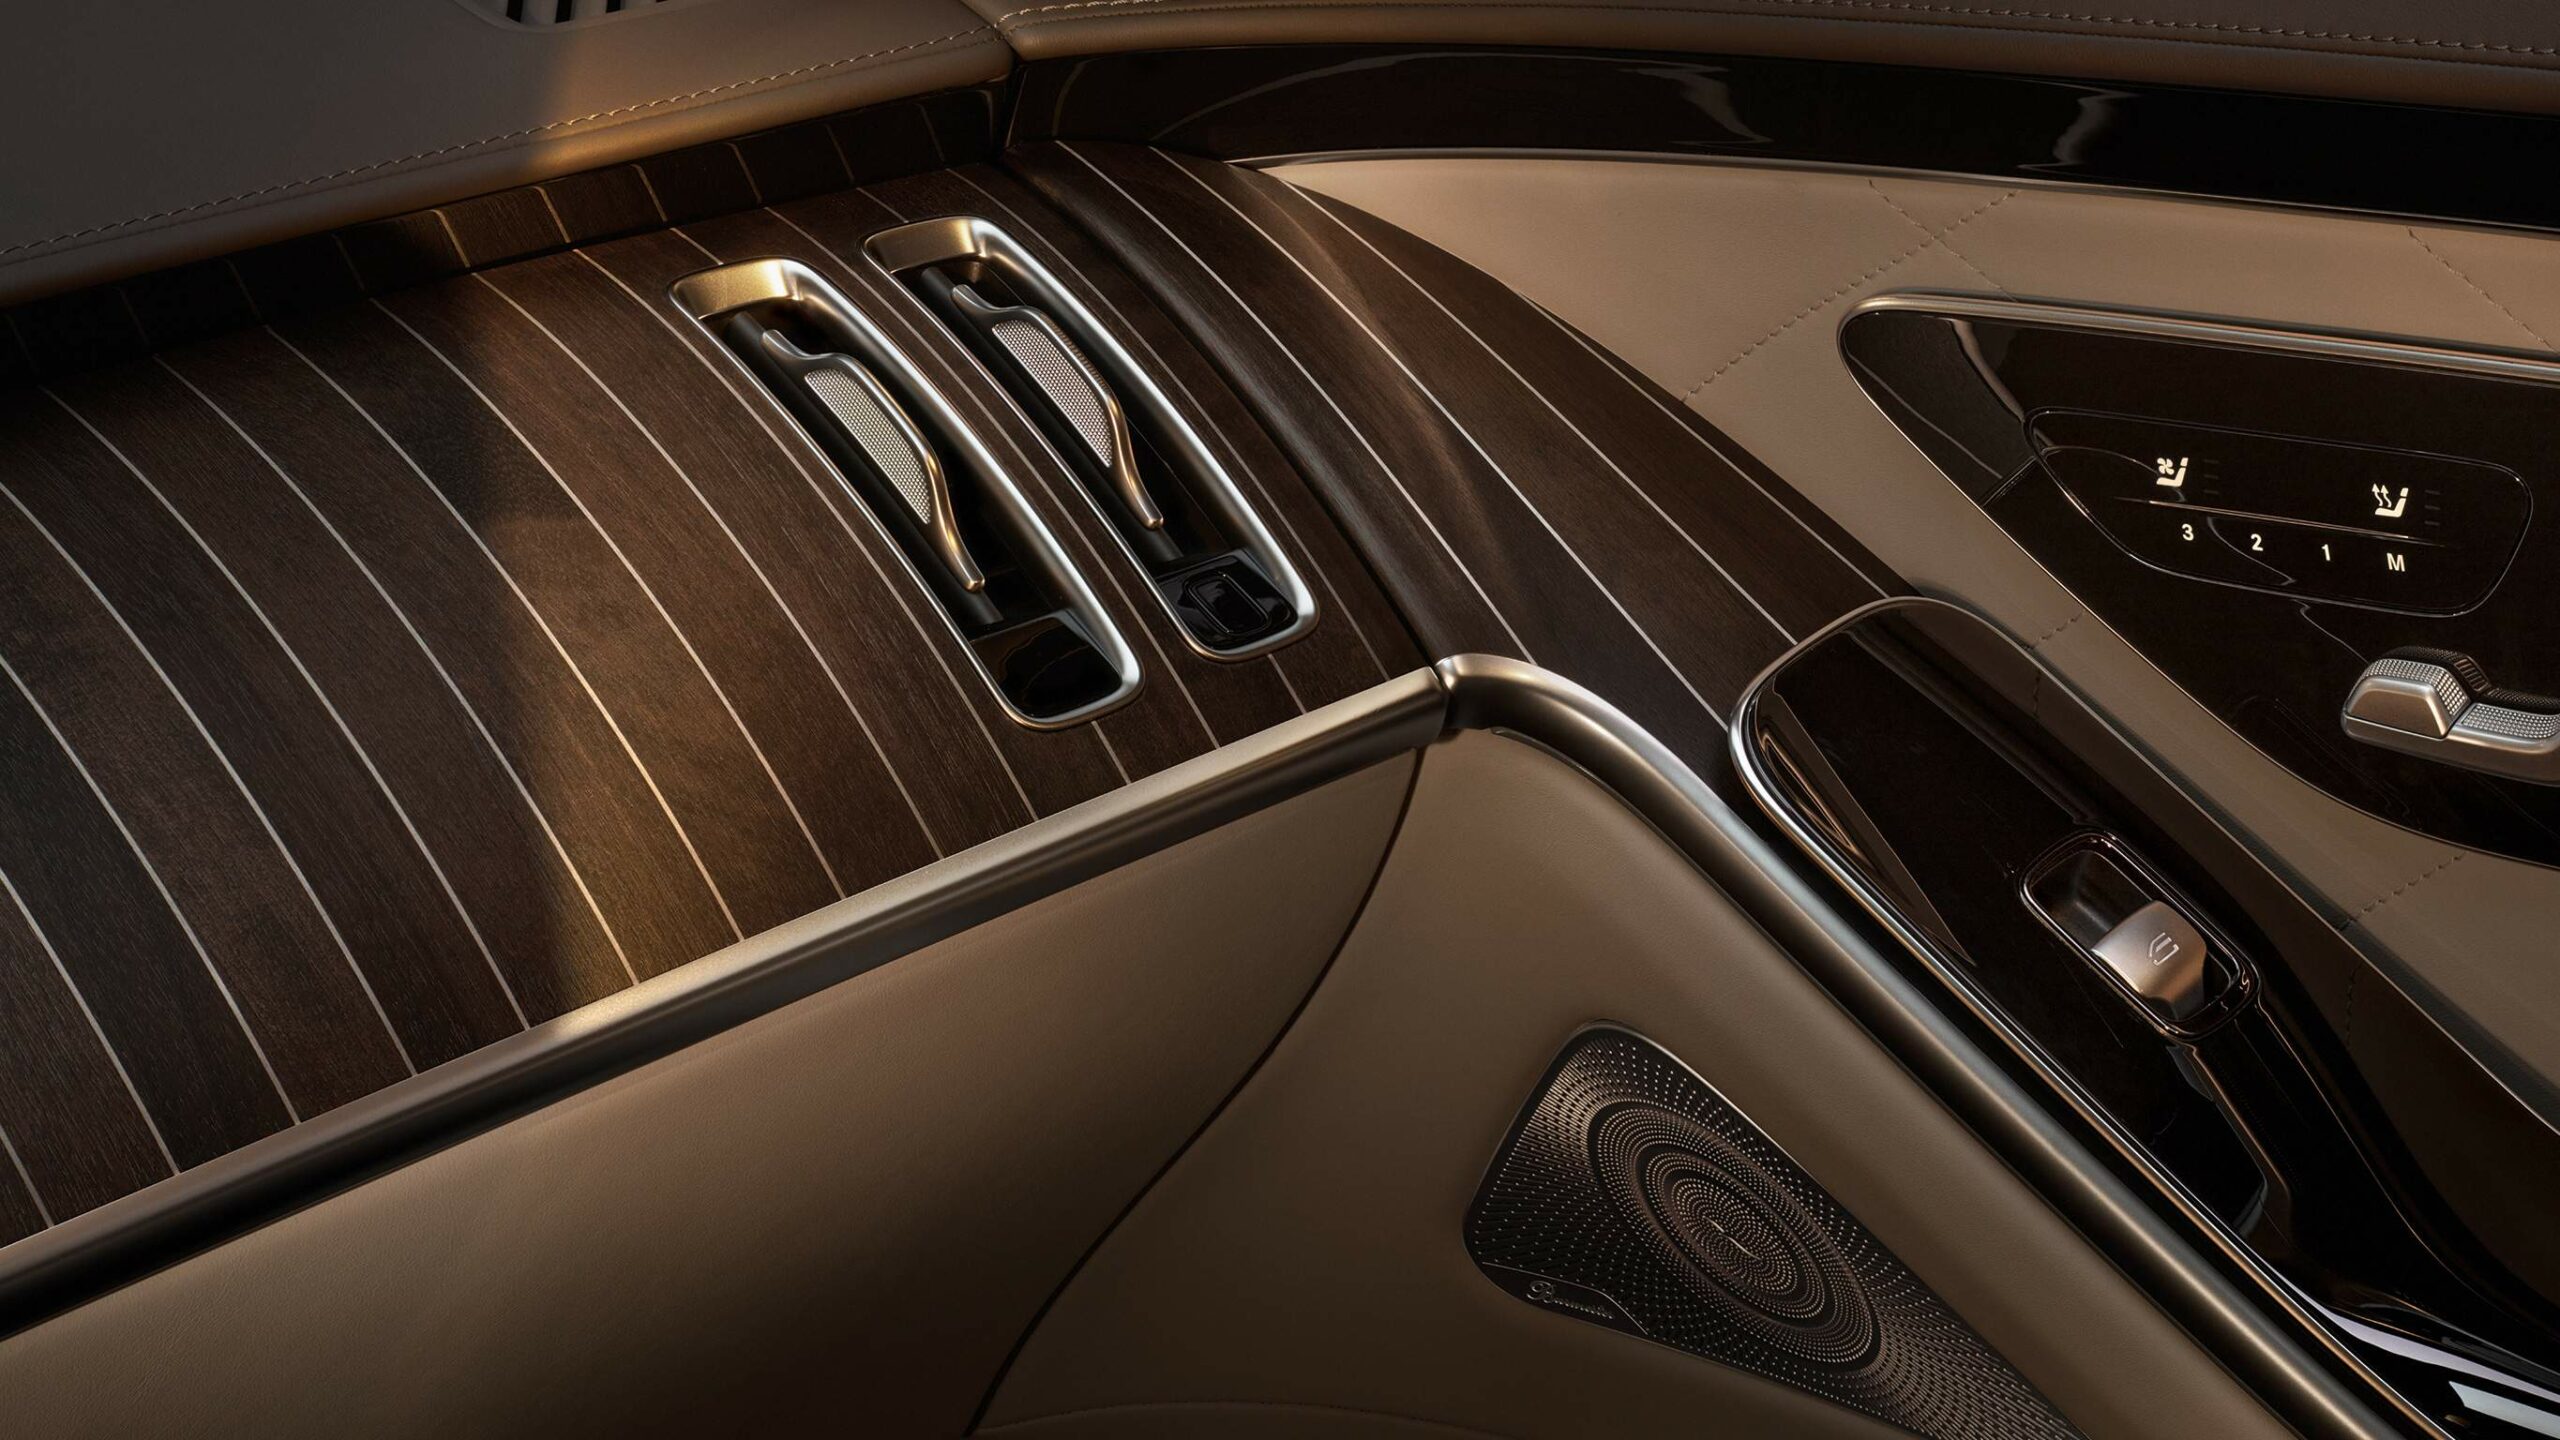 Diseño interior rustico en la Clase S Sedan de Mercedes-Benz